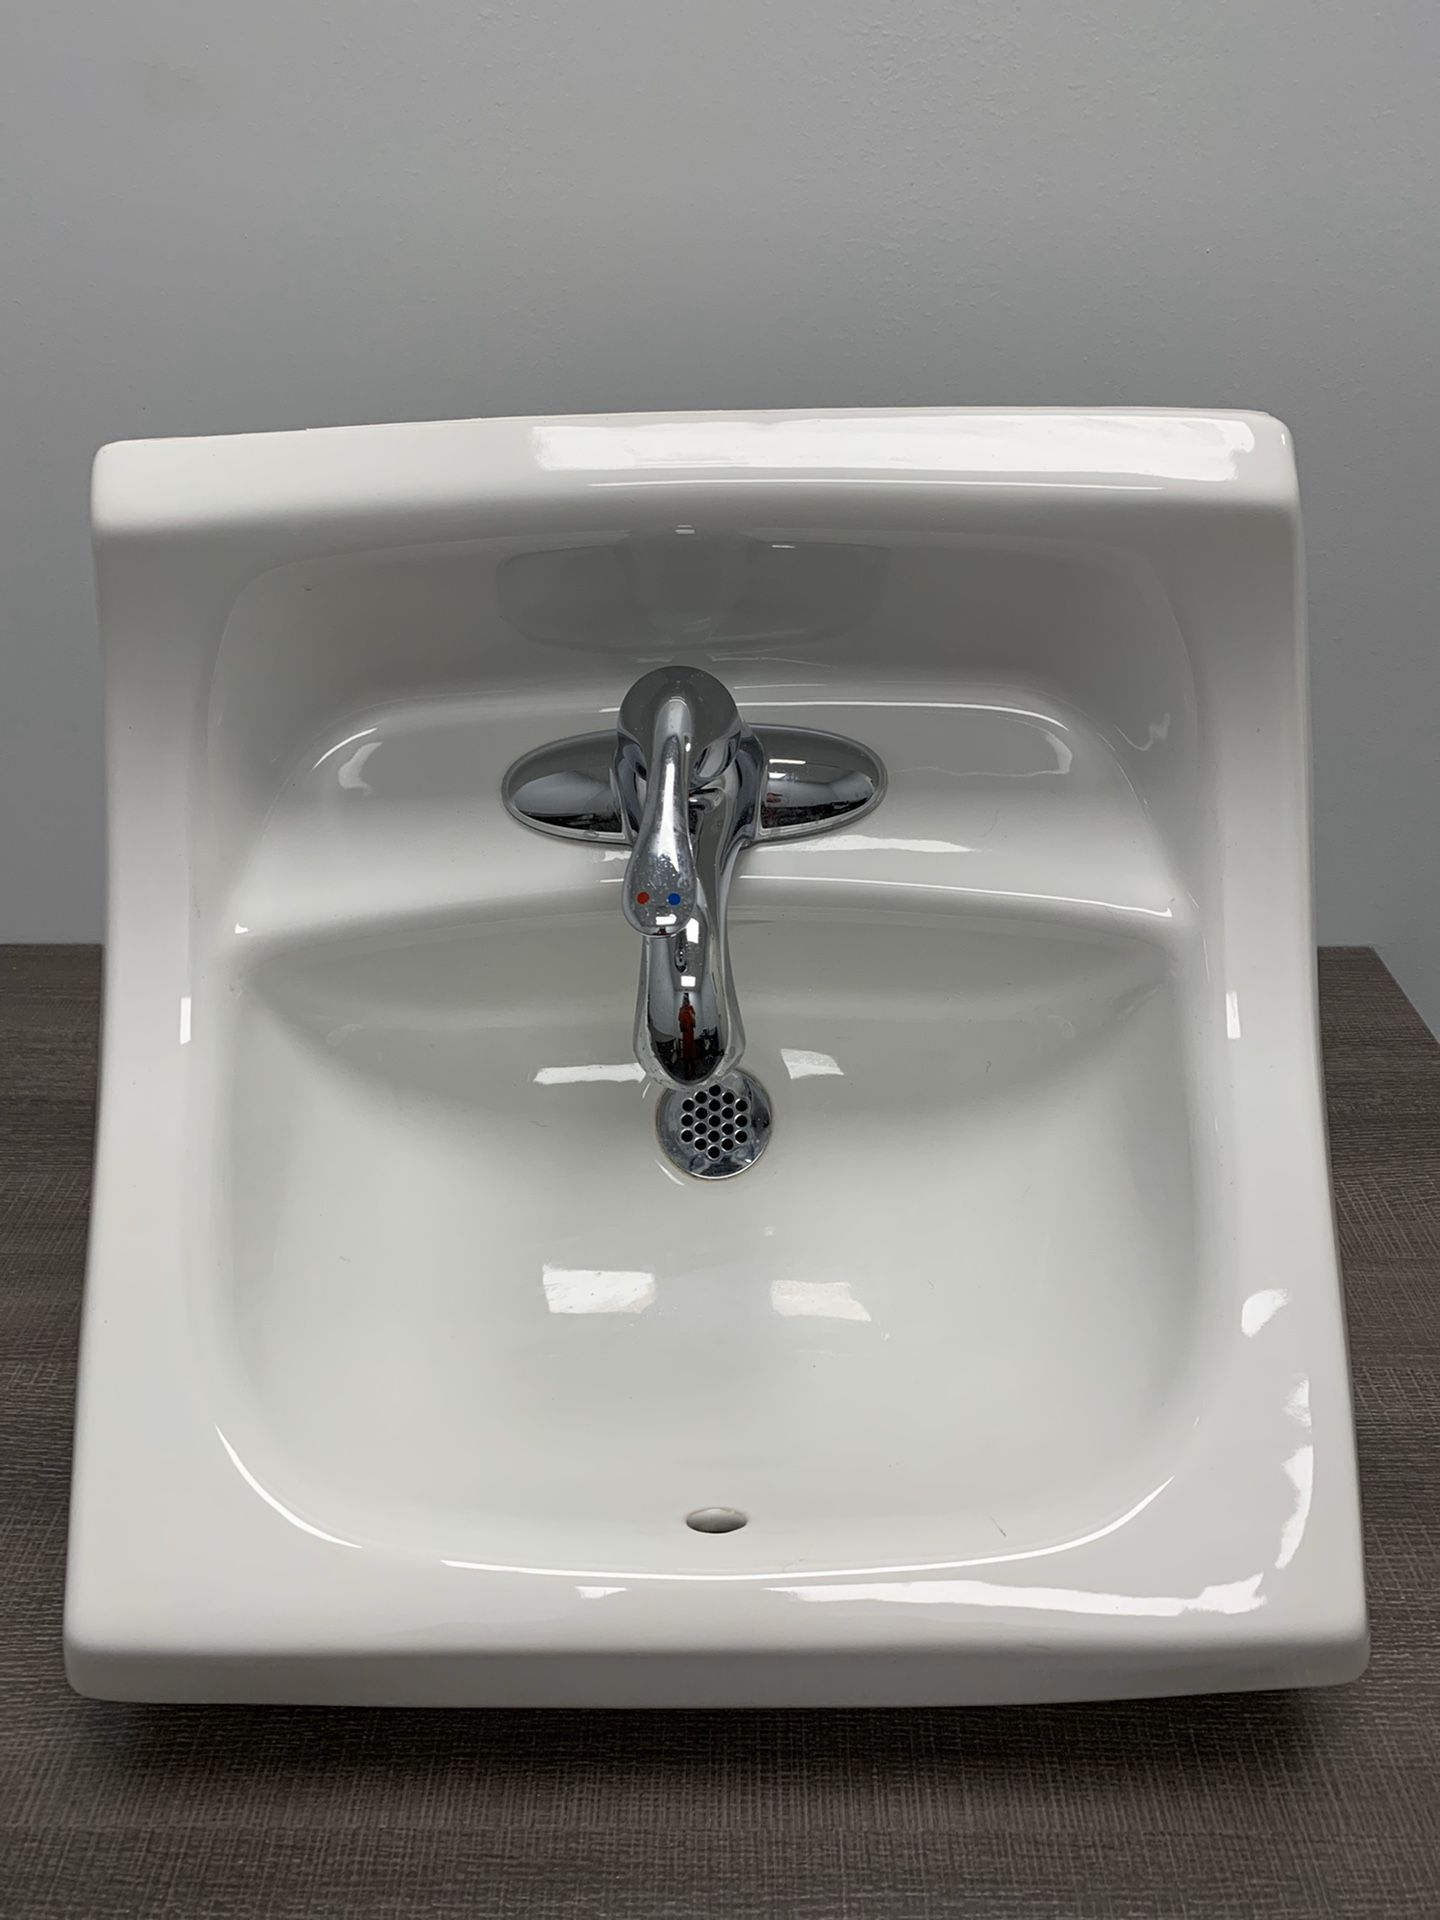 Bathroom Sink - Kohler Kingston™ 21-1/4" X 18-1/8" Wall Mount Porcelain Bathroom Sink K-2005-0 White white Faucets.